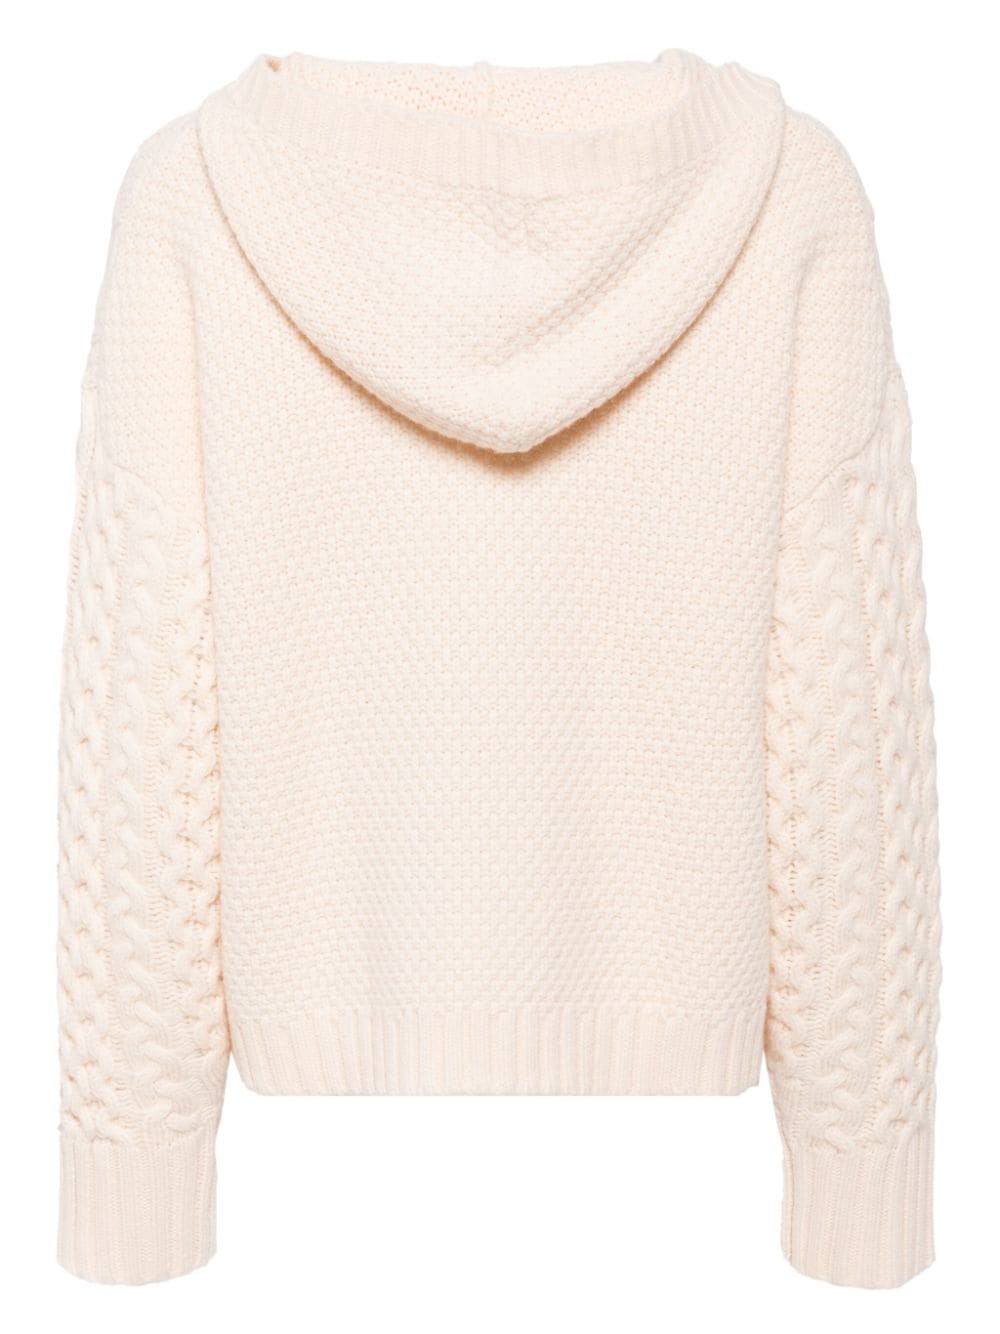 Dakota Zip Sweater in Cream